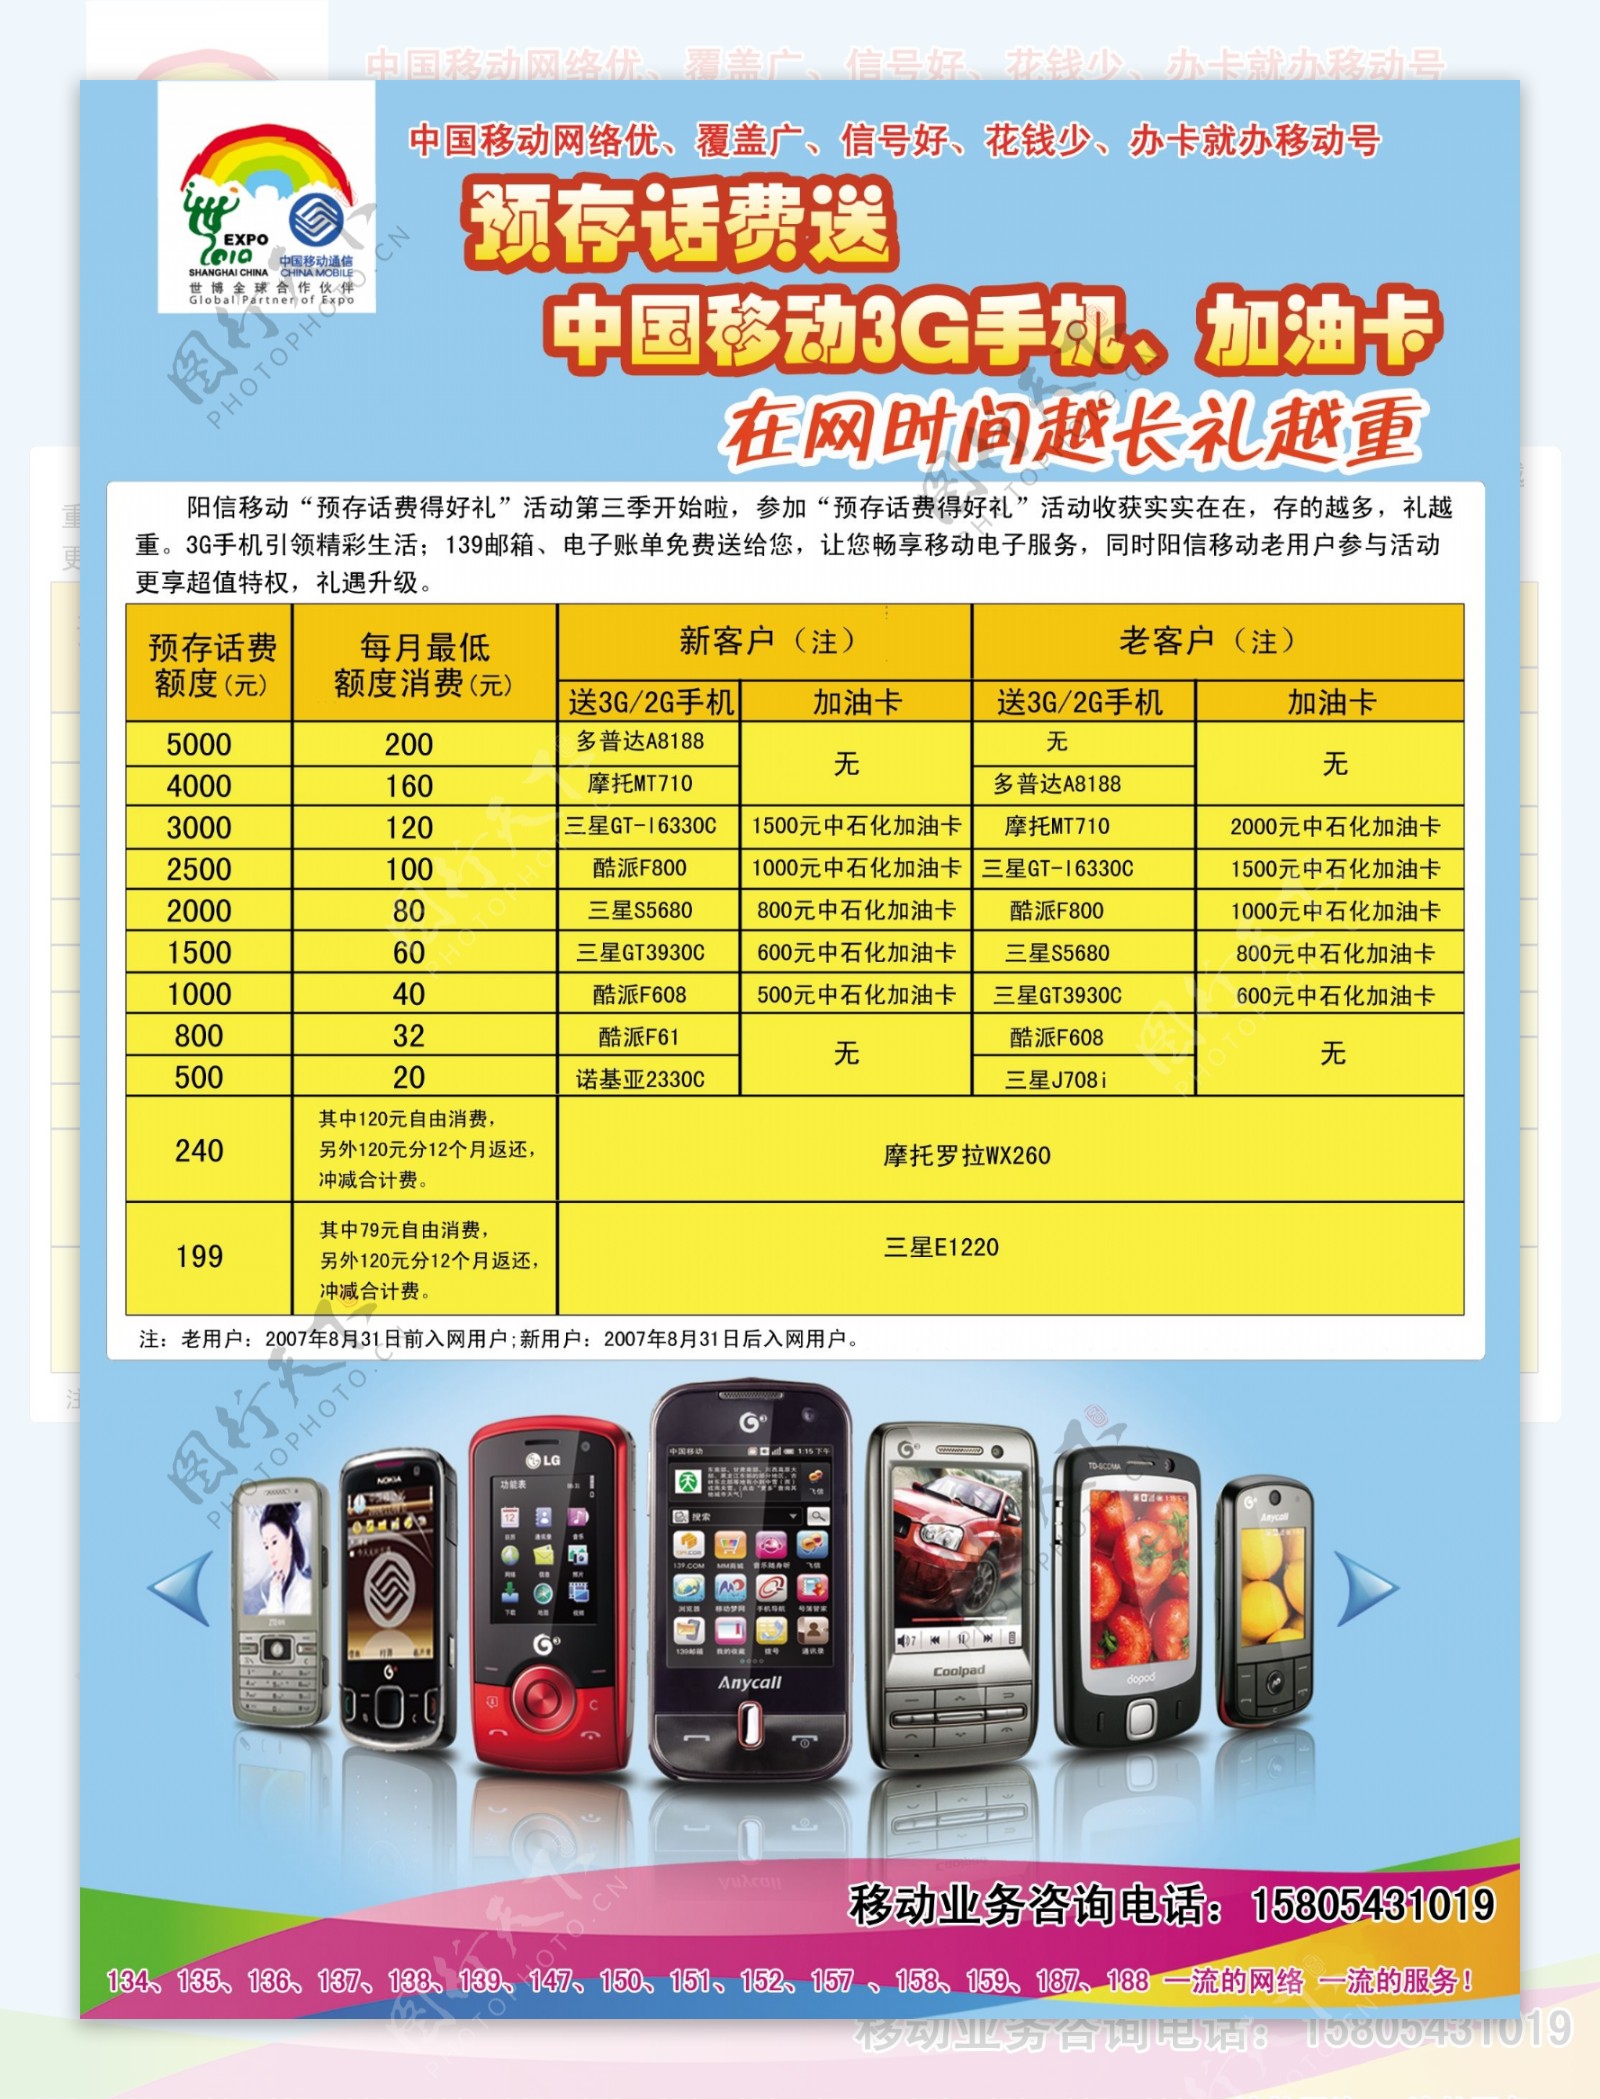 中国移动预存话费送3g手机活动宣传单图片